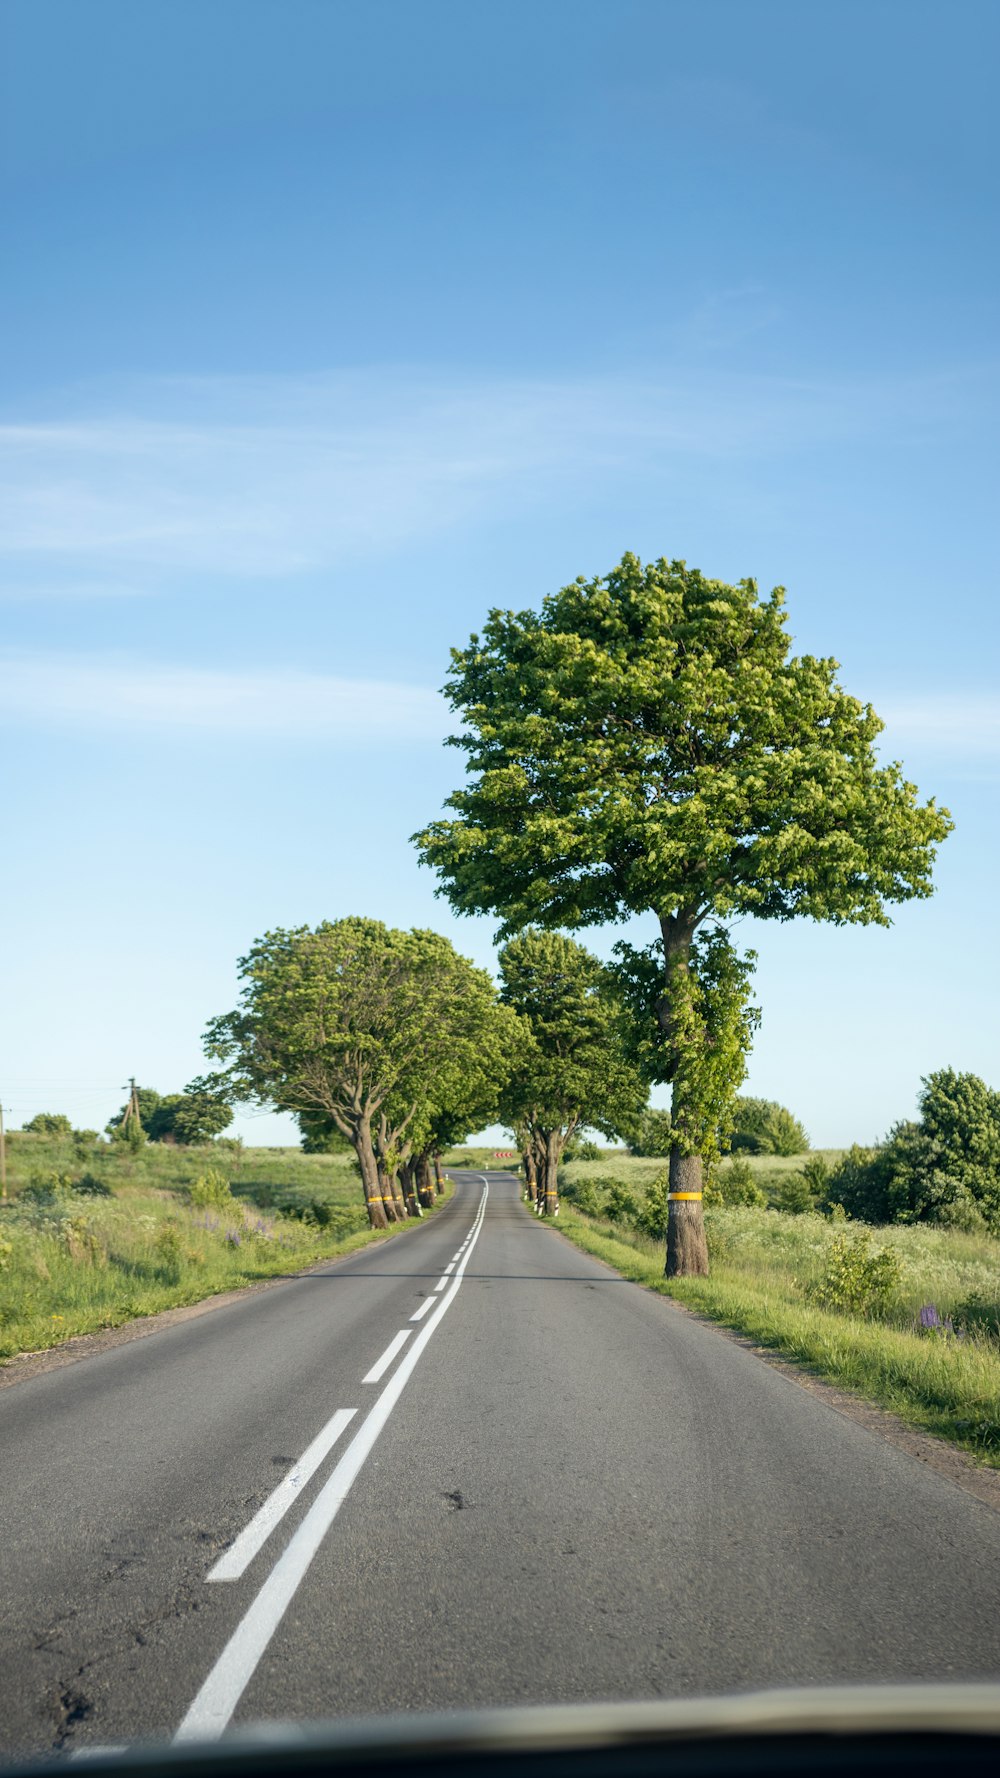 green tree beside gray asphalt road during daytime